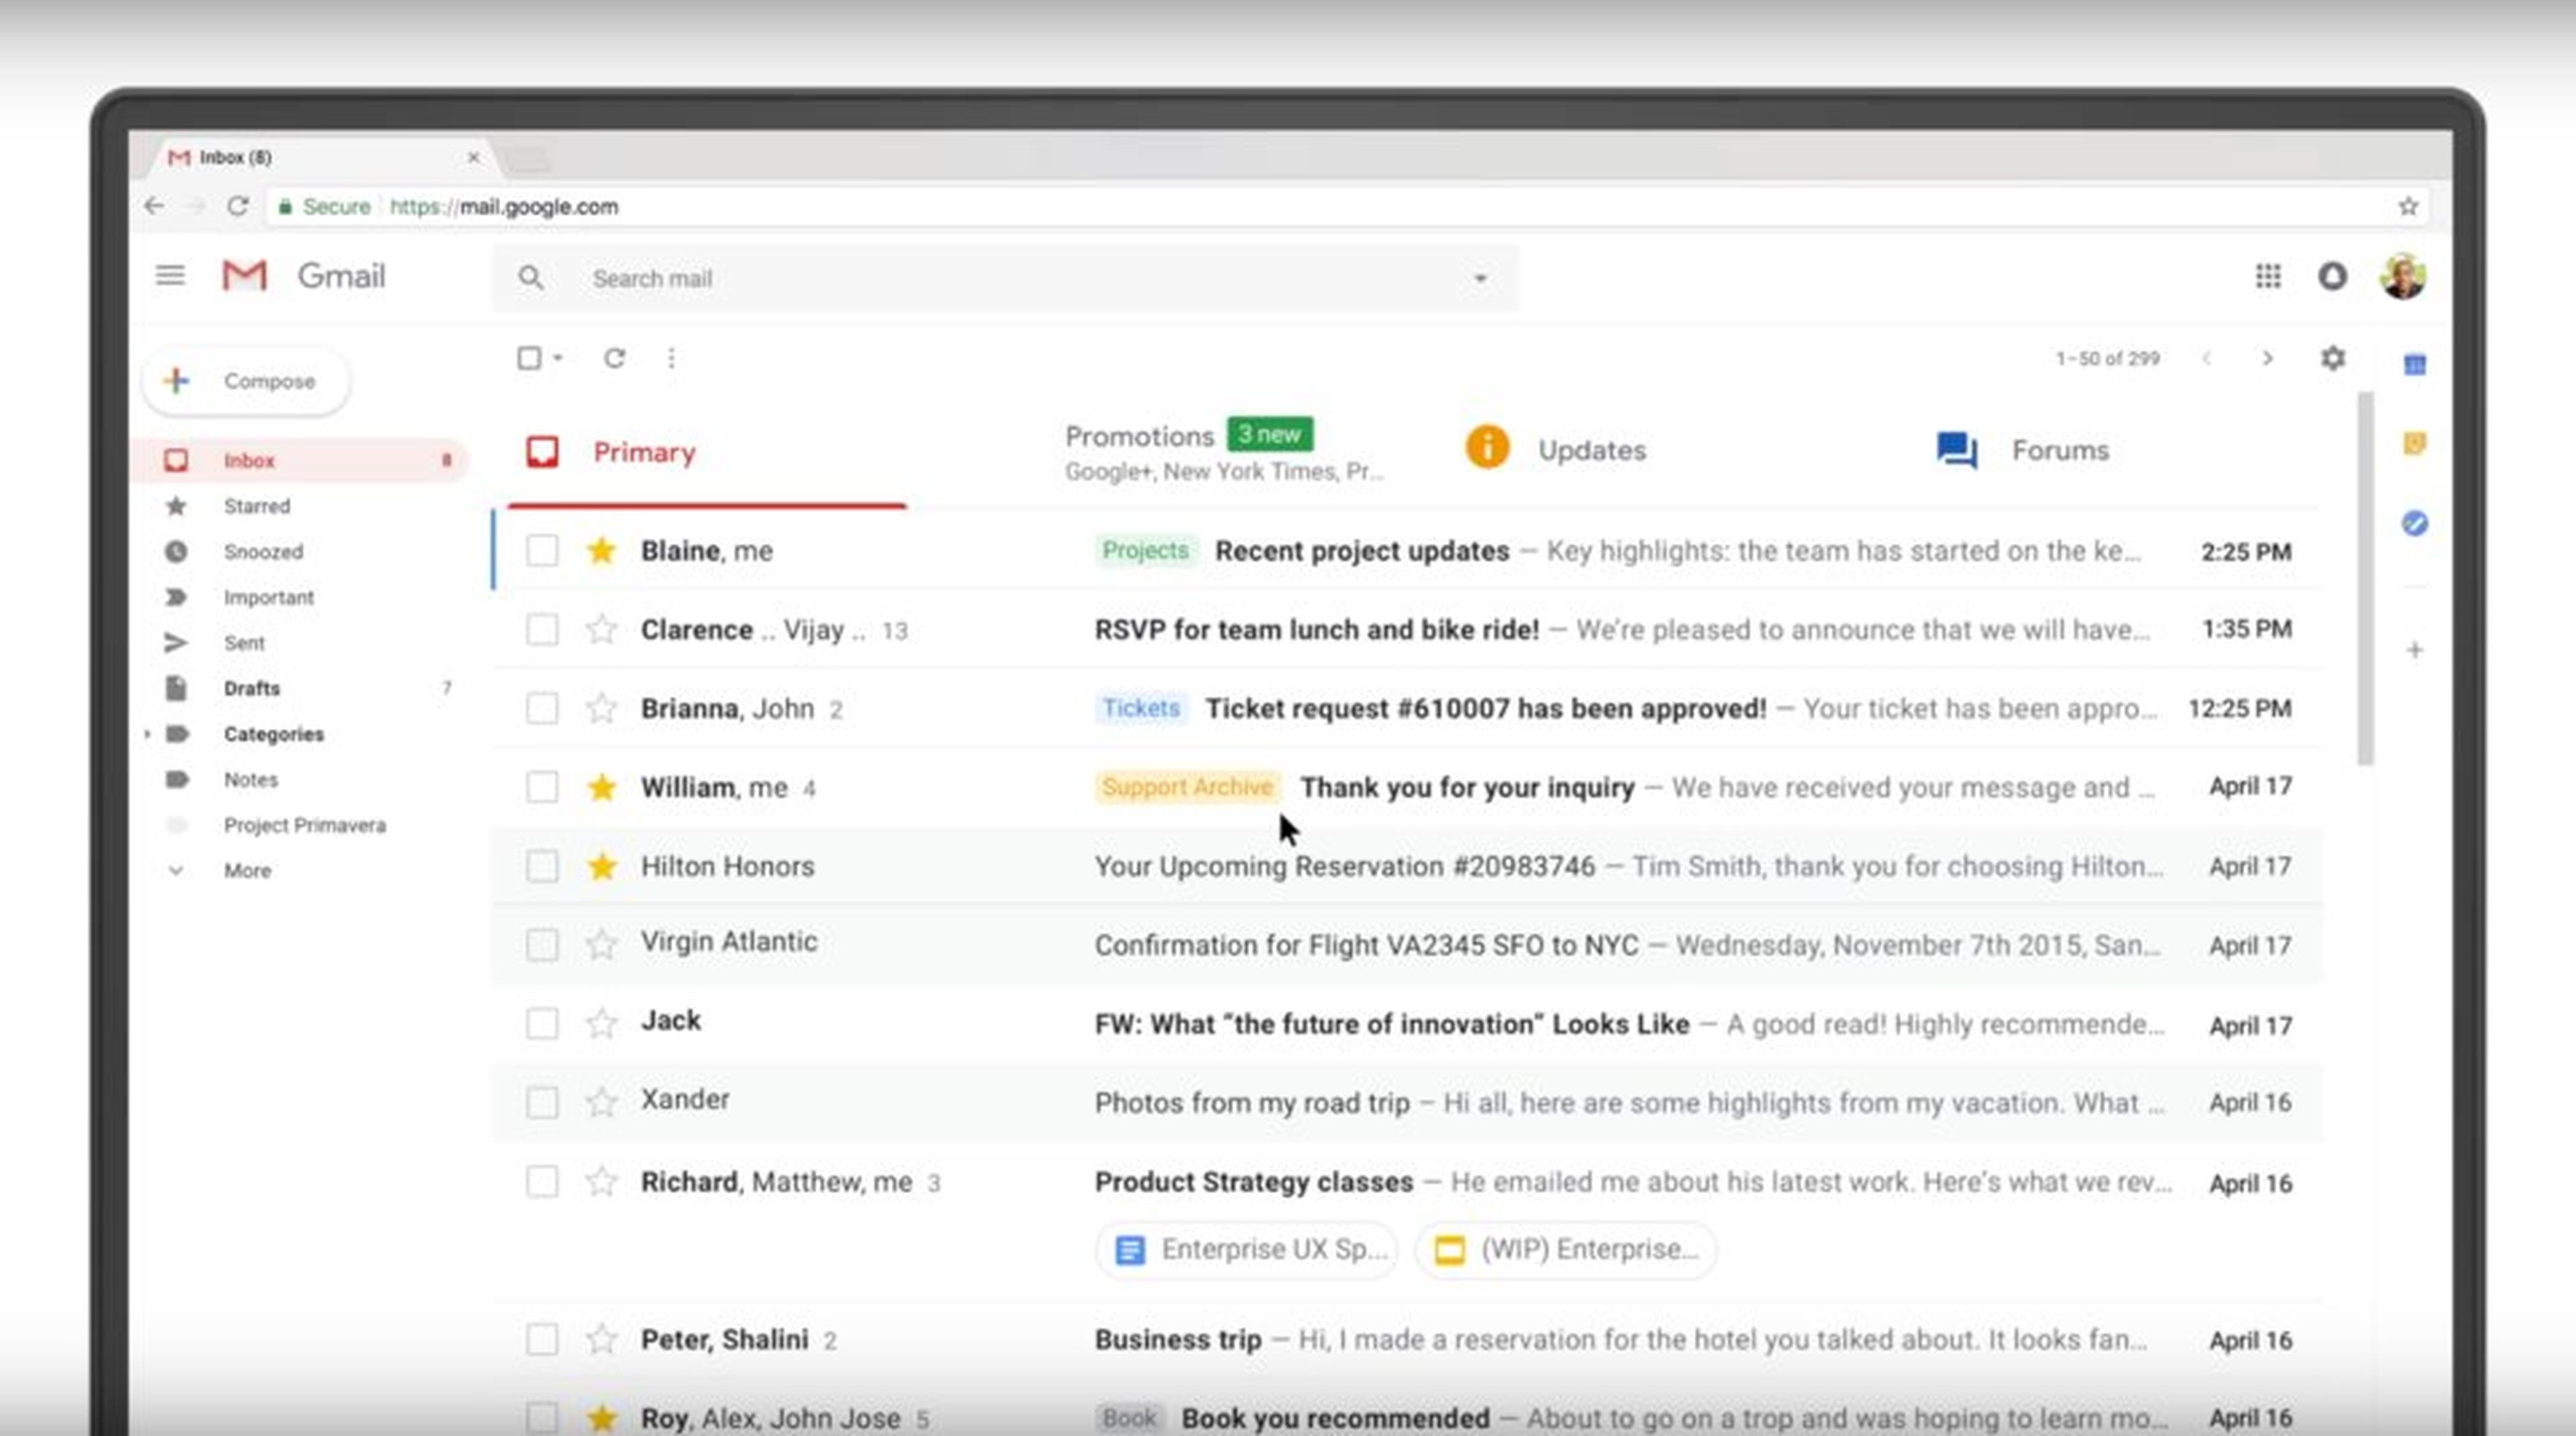 Hay una serie de cosas nuevas en la nueva interfaz web de Gmail.